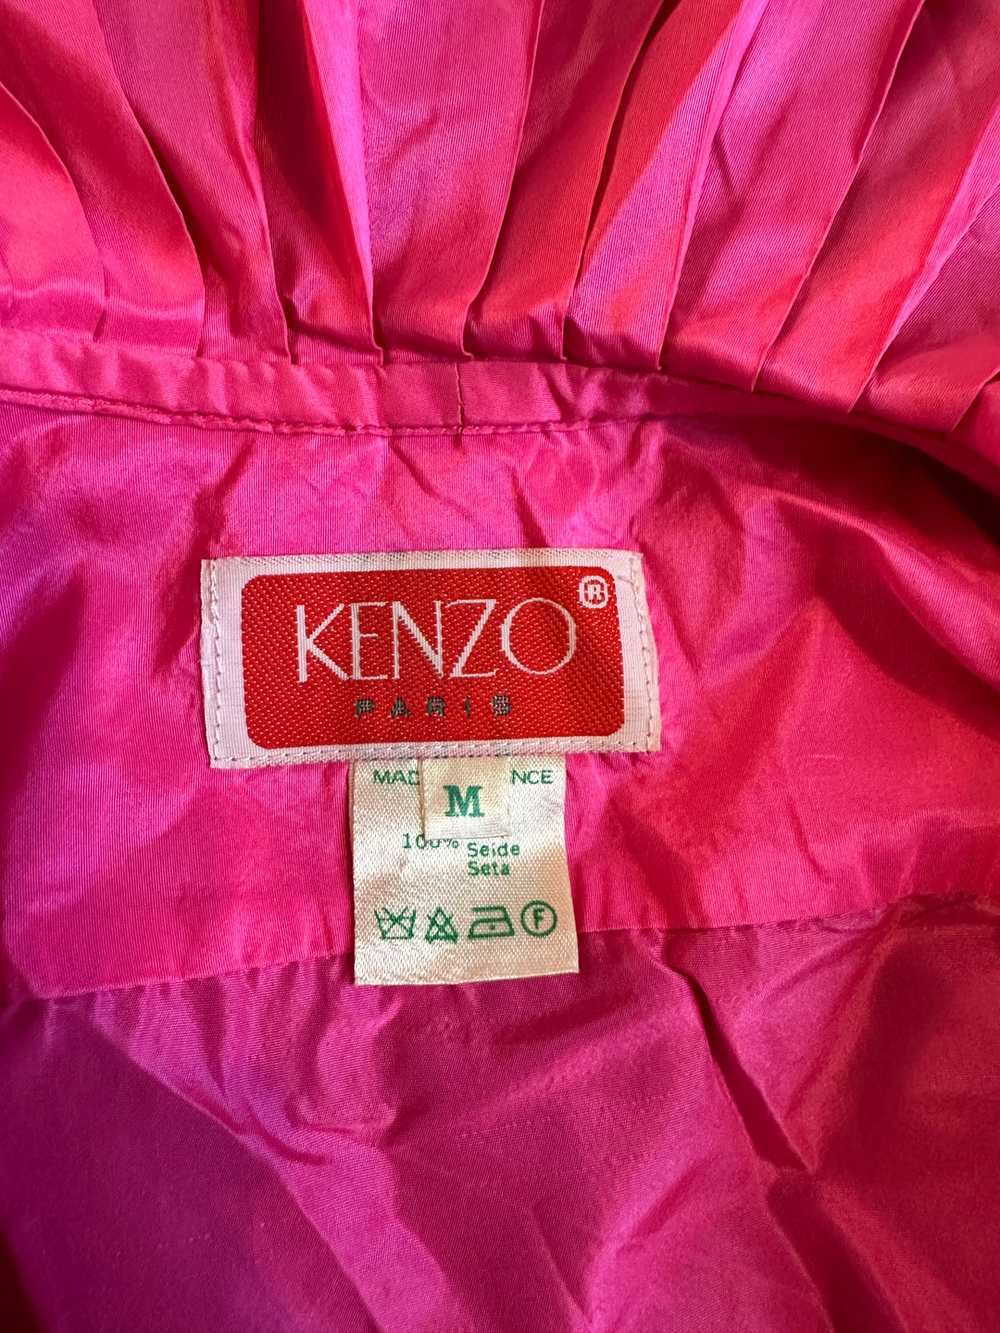 1980s Kenzo blouse - image 5